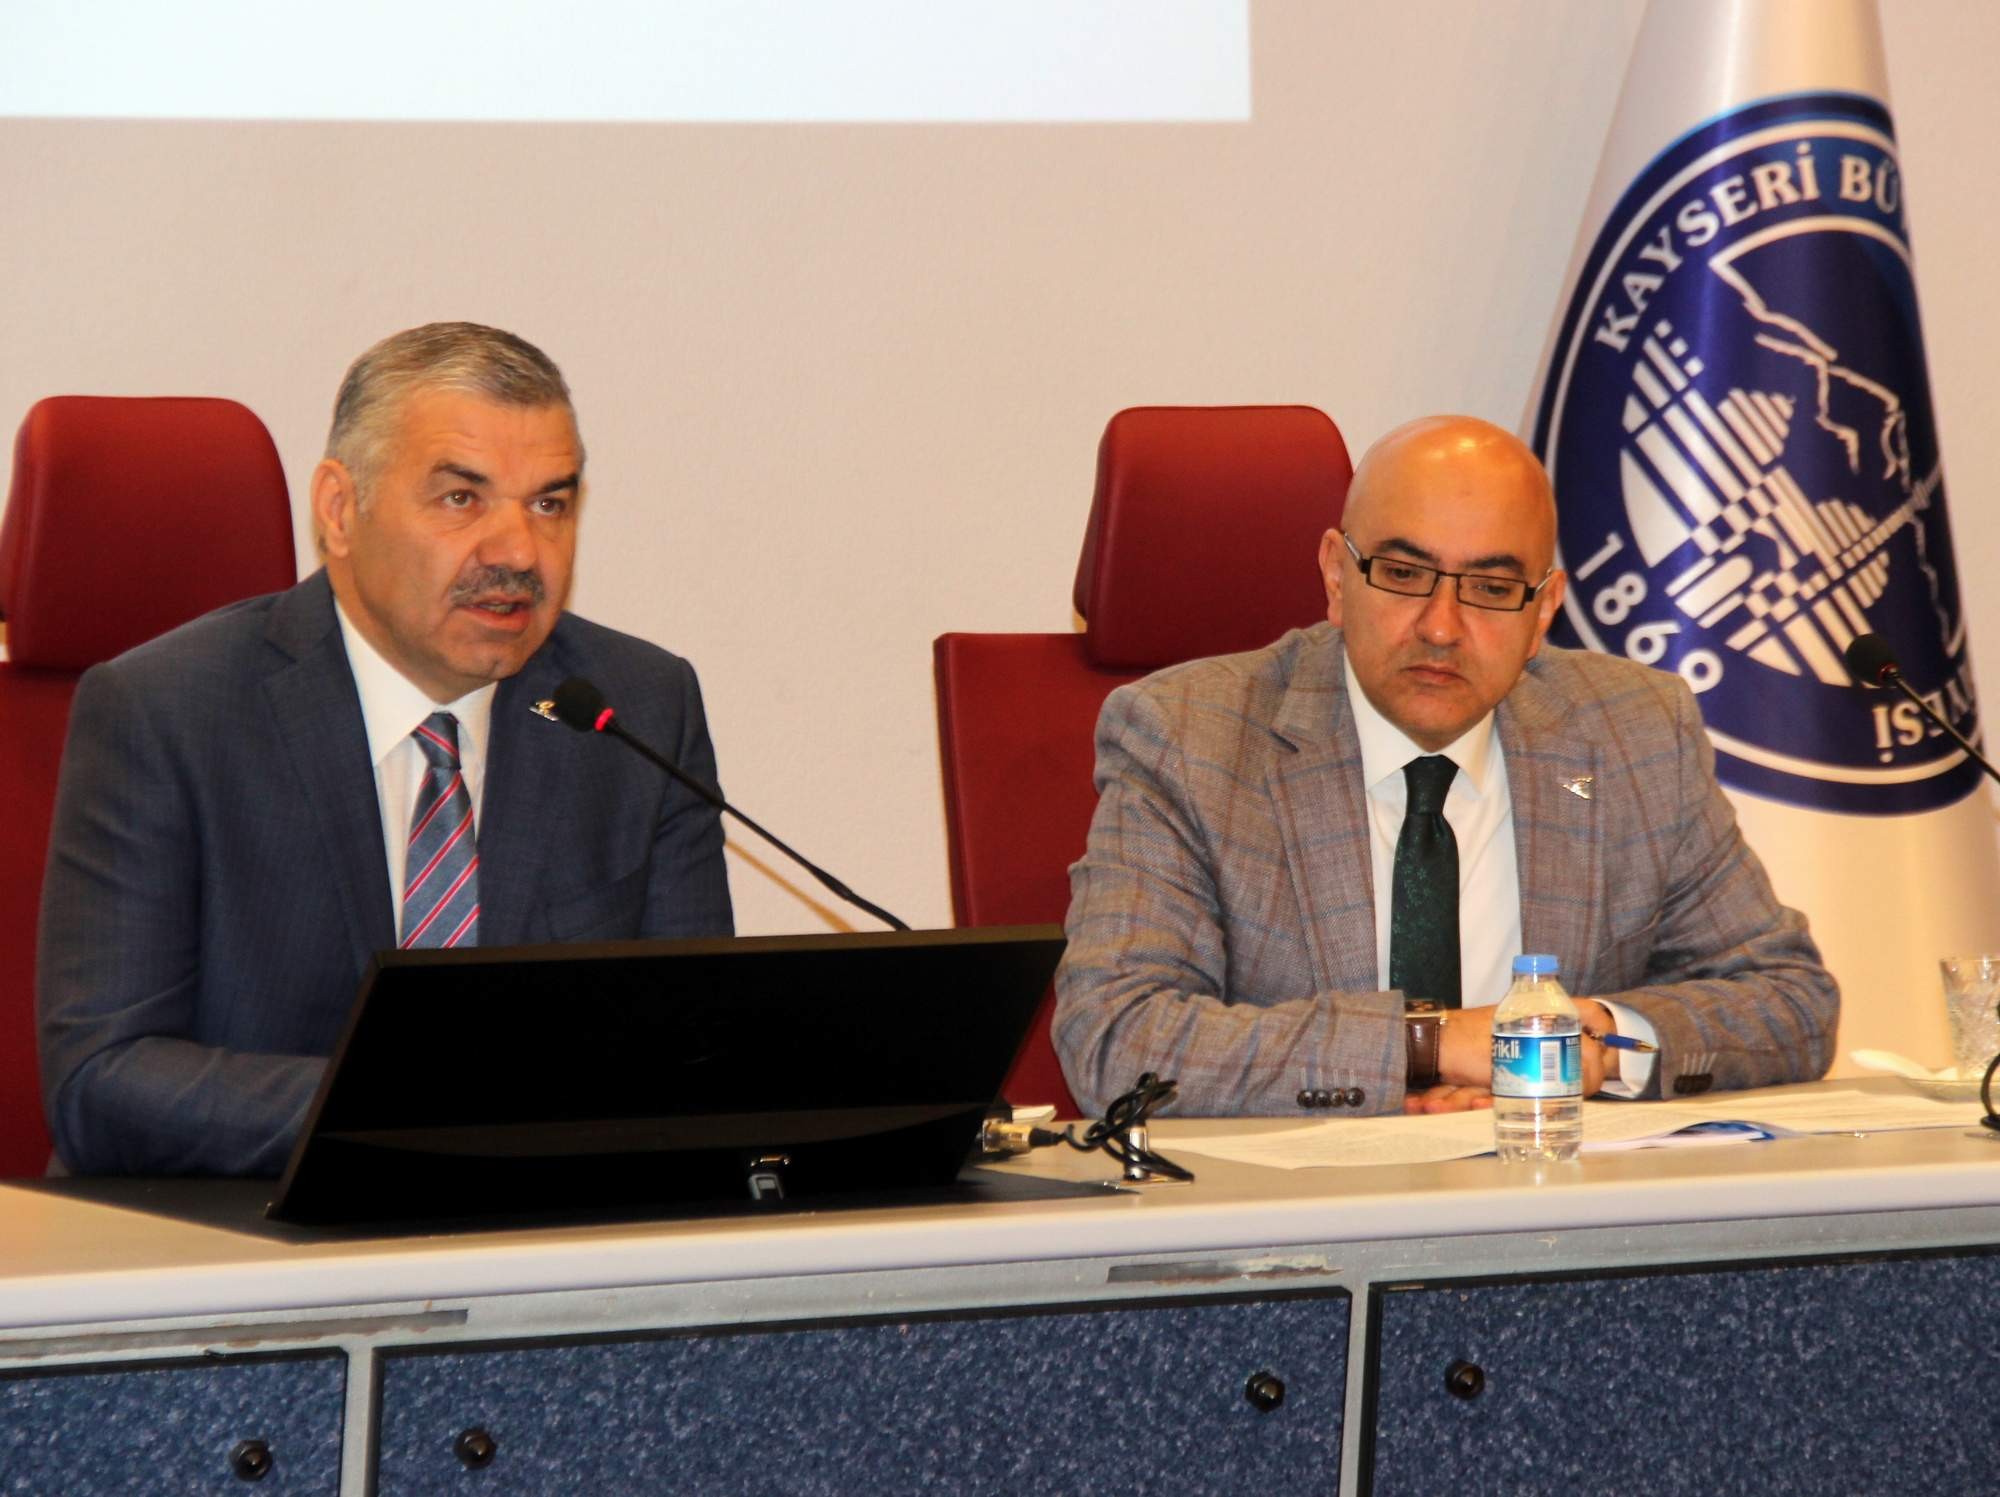 Büyükşehir Belediye Başkanı Mustafa Çelik: “Satılık malımız yok, ama teklif gelirse değerlendiririz”